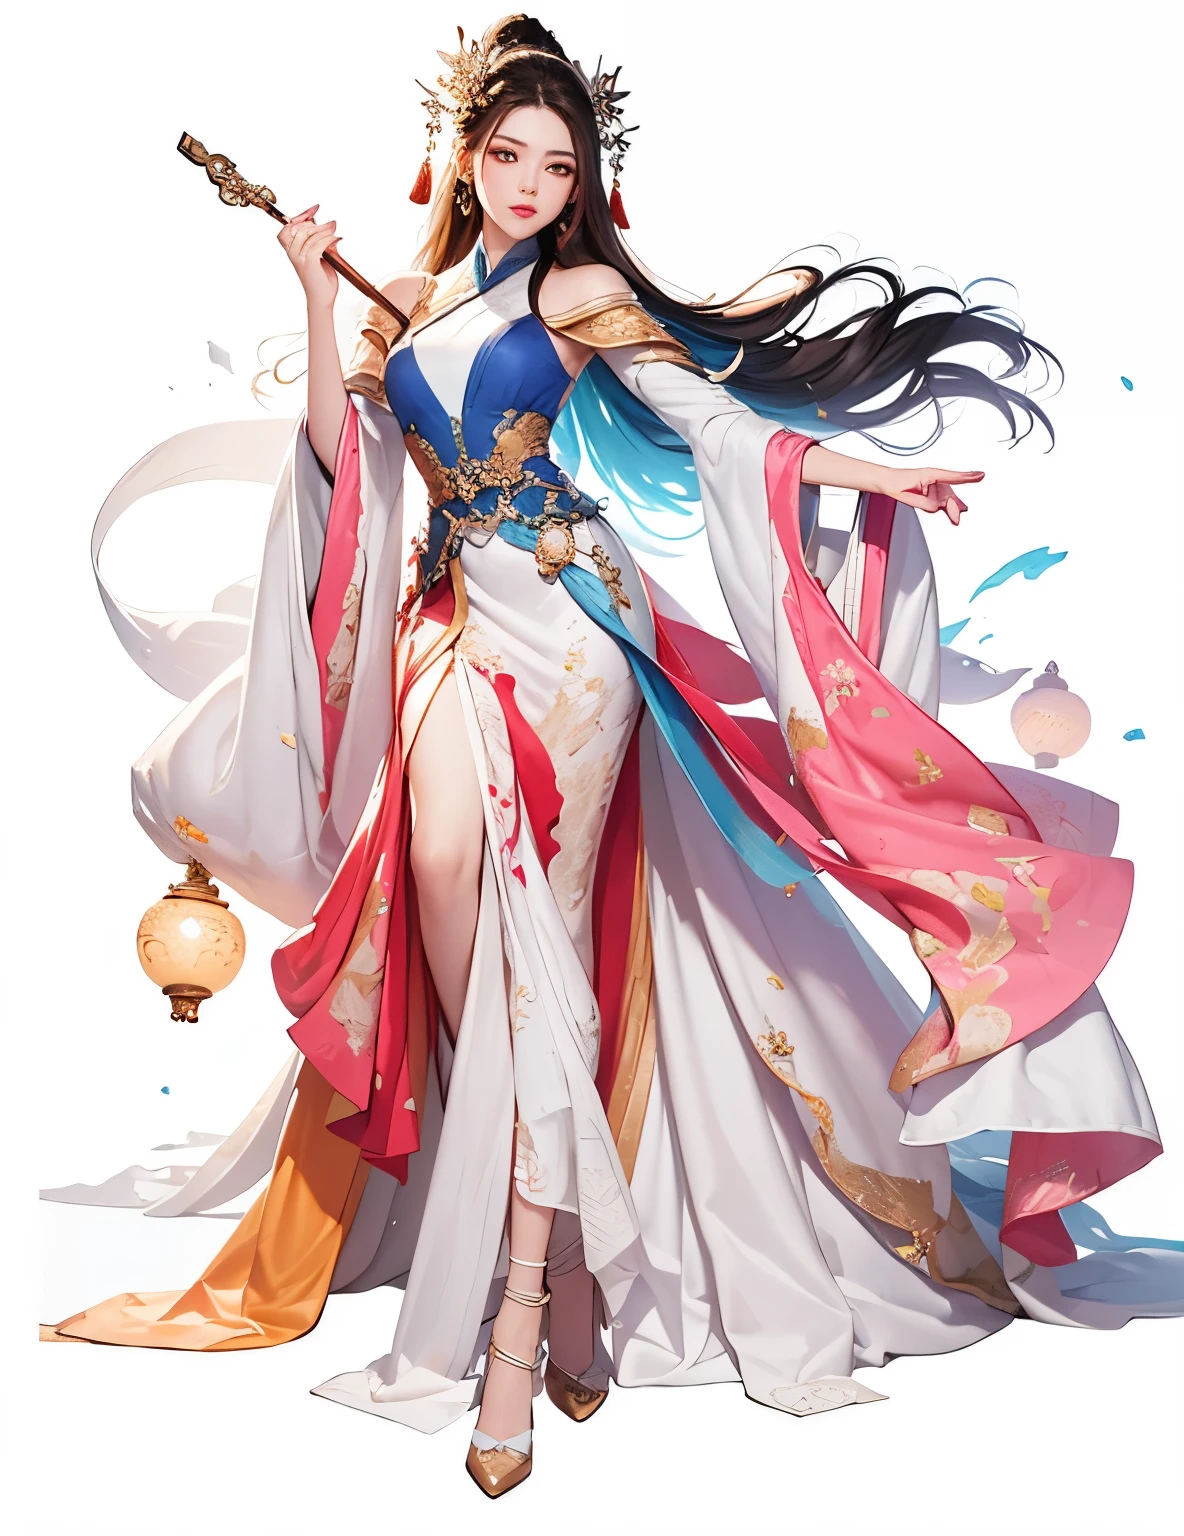 1 con un vestido rojo、Chica con cabello suelto, hermosa reina de la fantasía, salvar la belleza,inspirado en Lan Ying, Xianxia de cuerpo completo, por Qu Leilei, Inspirado por Zhu Lian, inspirado en los árboles, Inspirado por Qiu Ying, heise jinyao, antigua princesa china, pelo suelto y vestido, ((hermosa reina de la fantasía)),((rico y colorido)),(dinastía Tang), Obra maestra, mejor calidad, Hermosa pintura, high level of detalle,(eliminar el ruido :0.6), [prueba de tinta],(refracción de tinta), ,detalle,fondo en blanco,(mejor calidad,  extremely detalleed CG unified 8k wallpaper, competente, mejor calidad, super detalle),(Luz azul intermitente),Parte superior del cuerpo envuelta en seda.,((((cara bonita)))